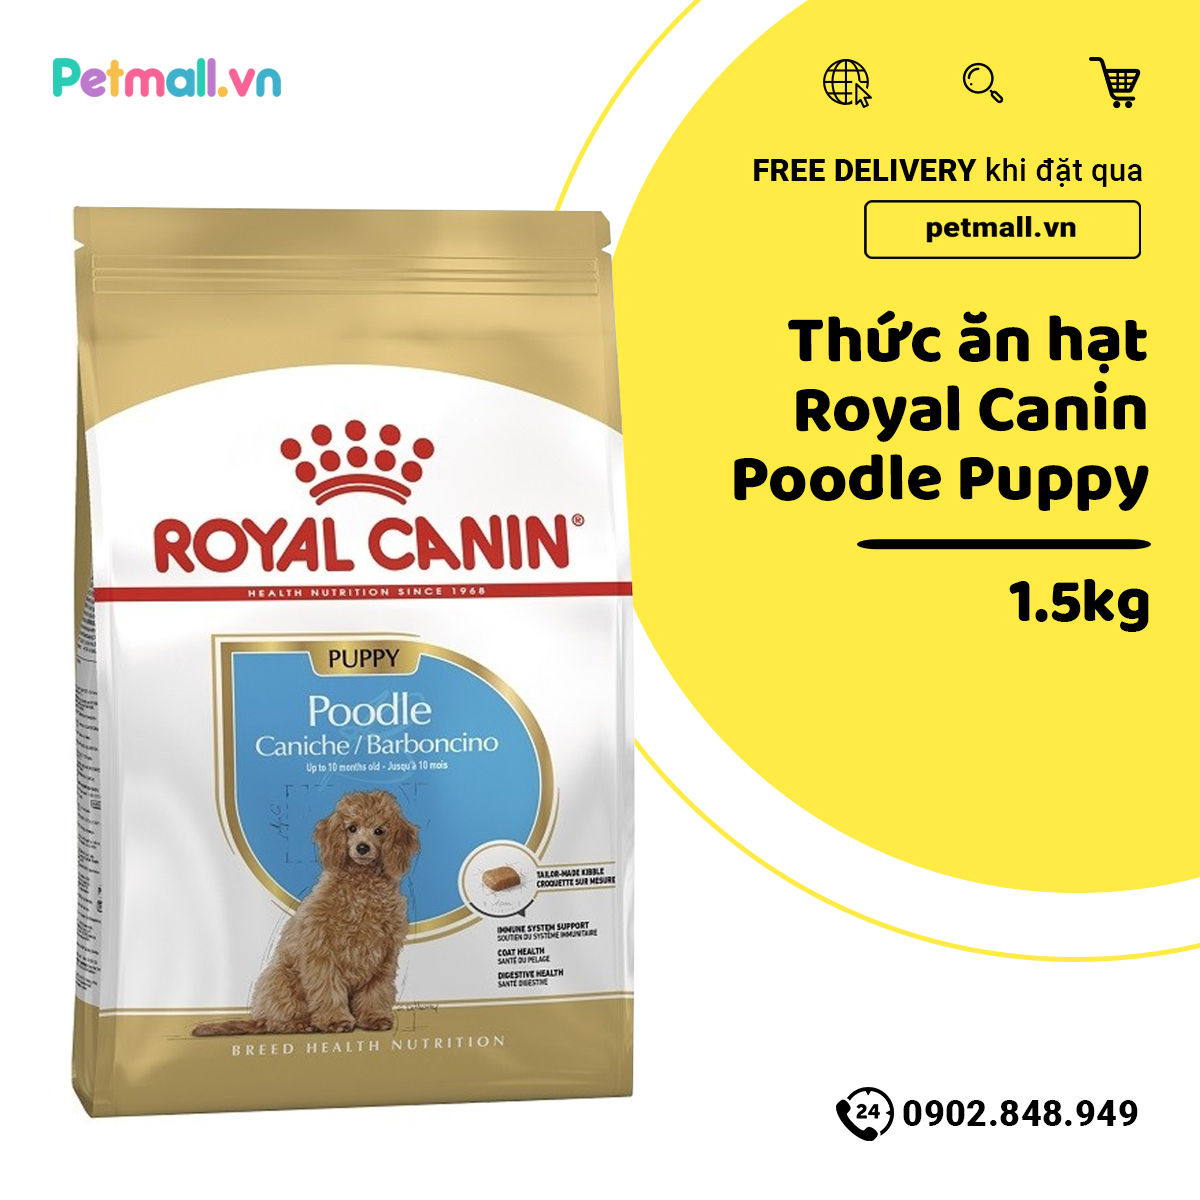 Thức ăn hạt Royal Canin Poodle Puppy 1.5kg